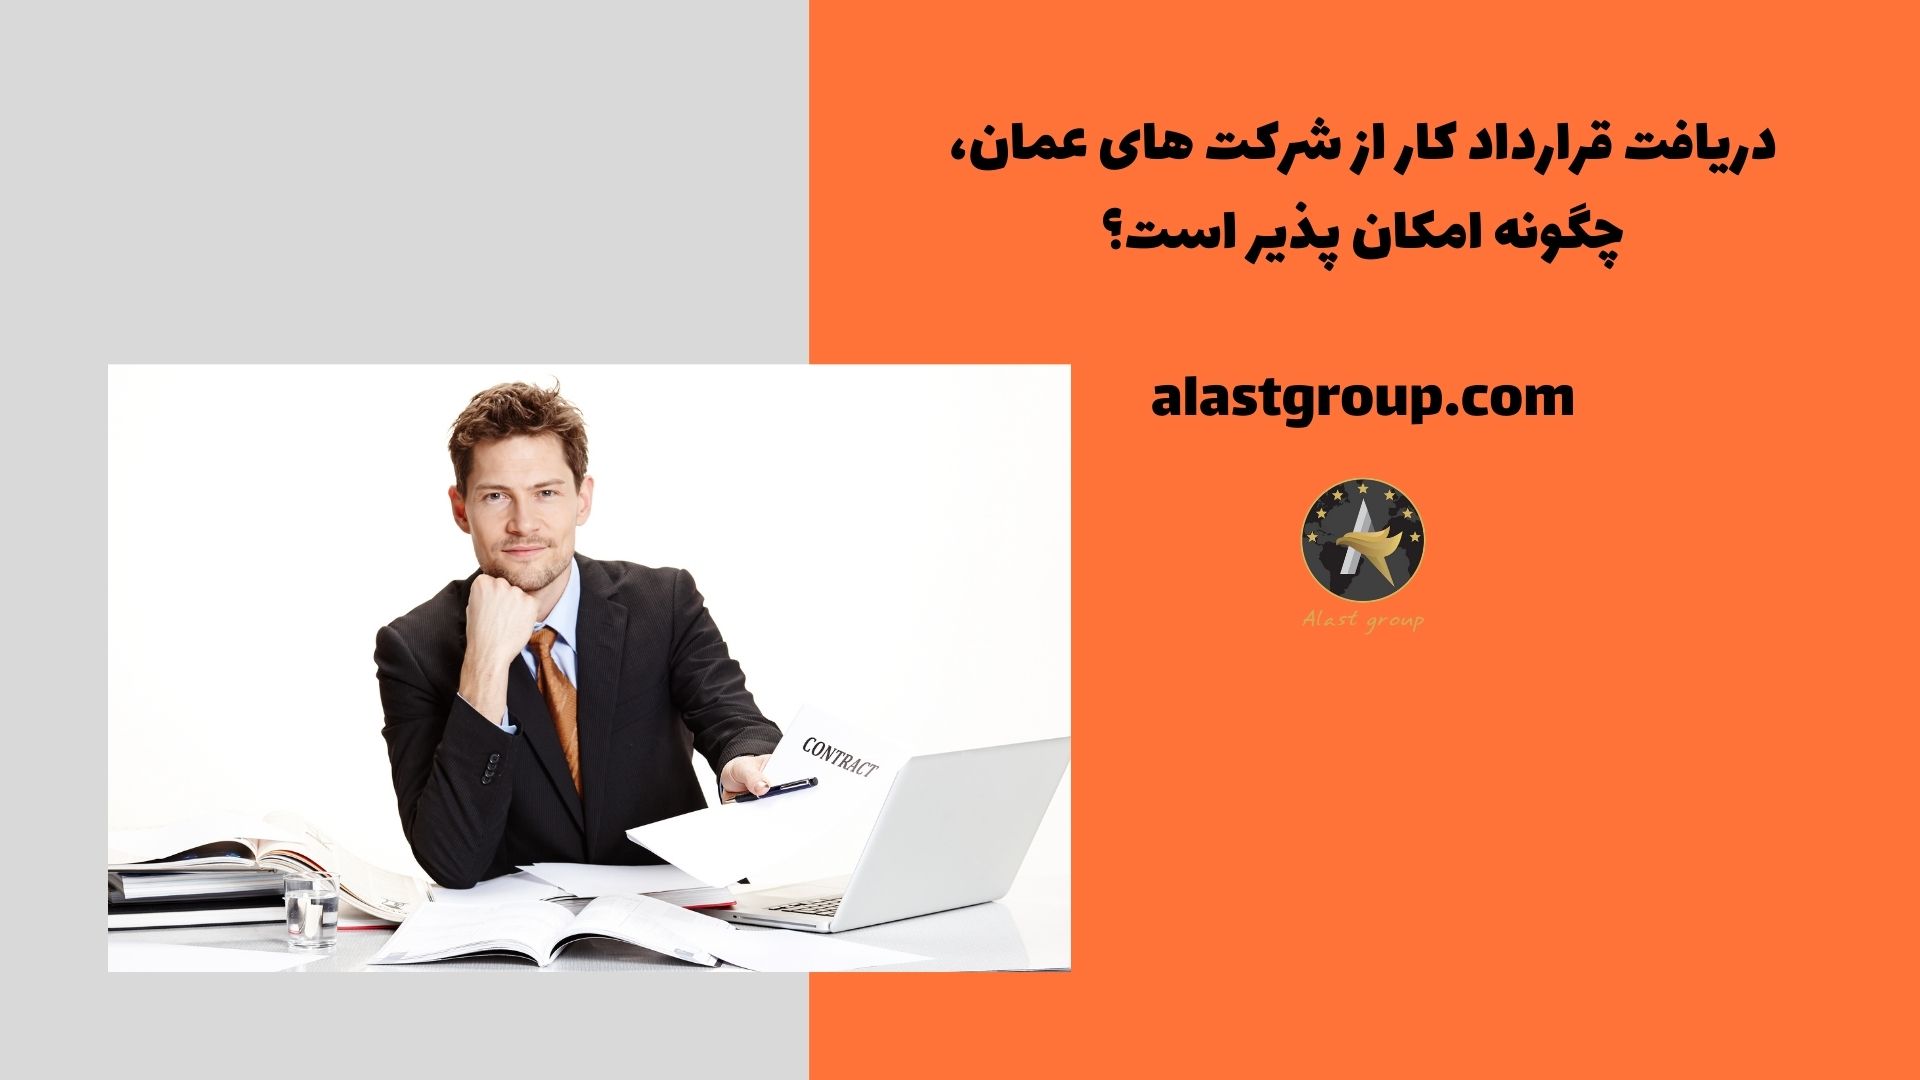 دریافت قرارداد کار از شرکت های عمان، چگونه امکان پذیر است؟